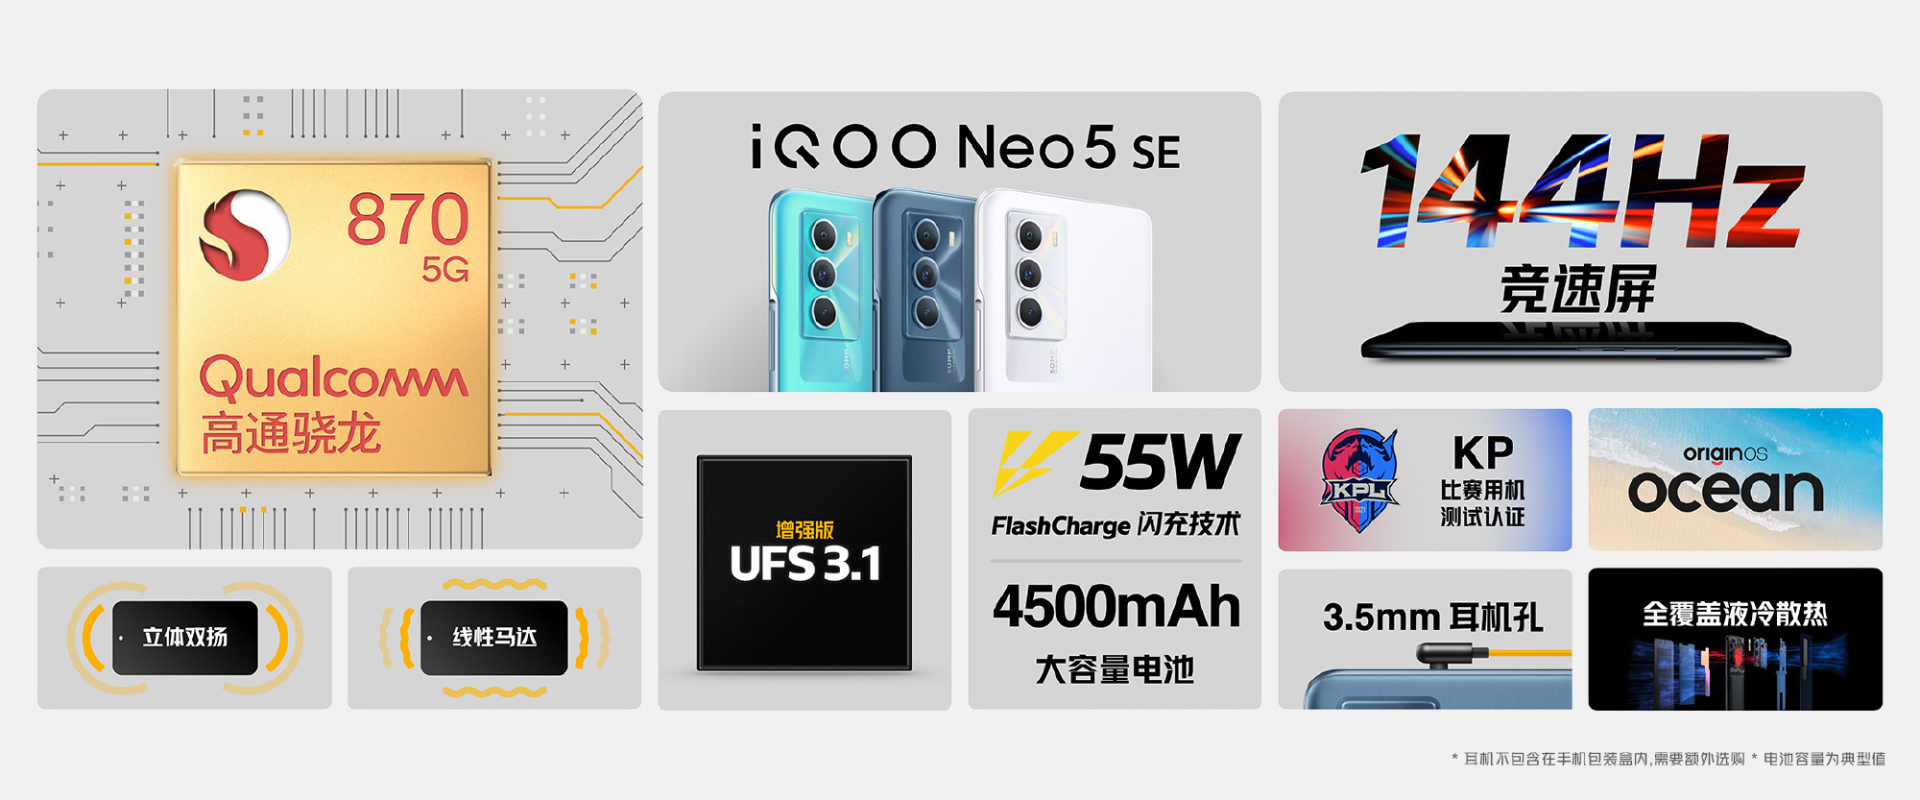 144Hz 竞速屏+骁龙870！iQOO Neo5 SE为手游玩家量身打造  第2张